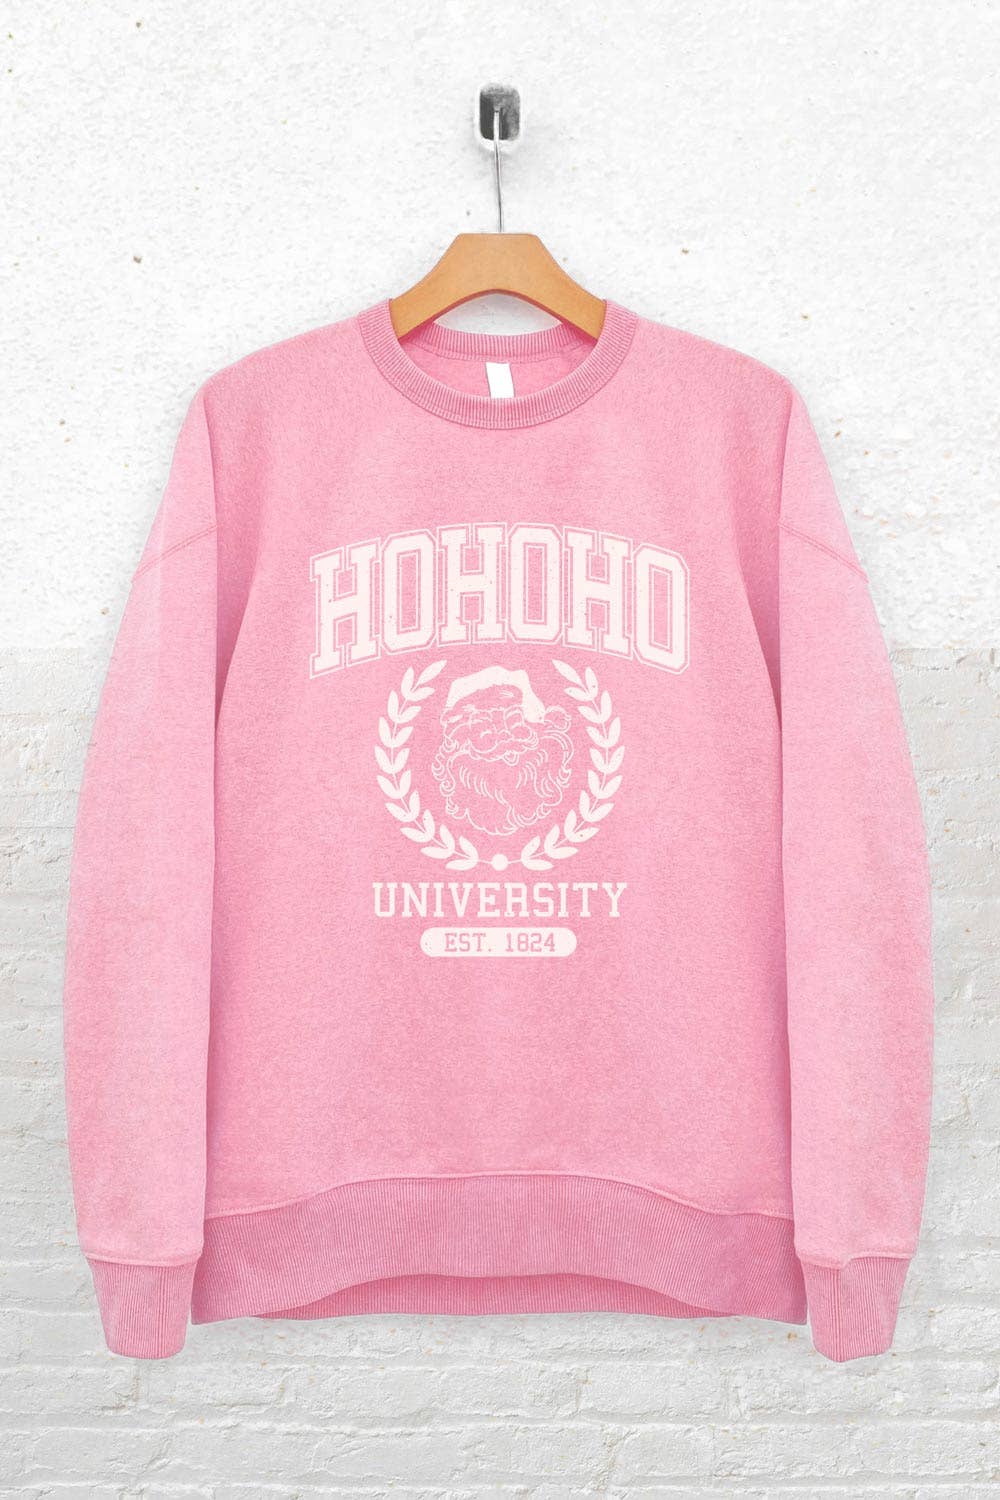 Ho Ho Ho University Sweatshirt